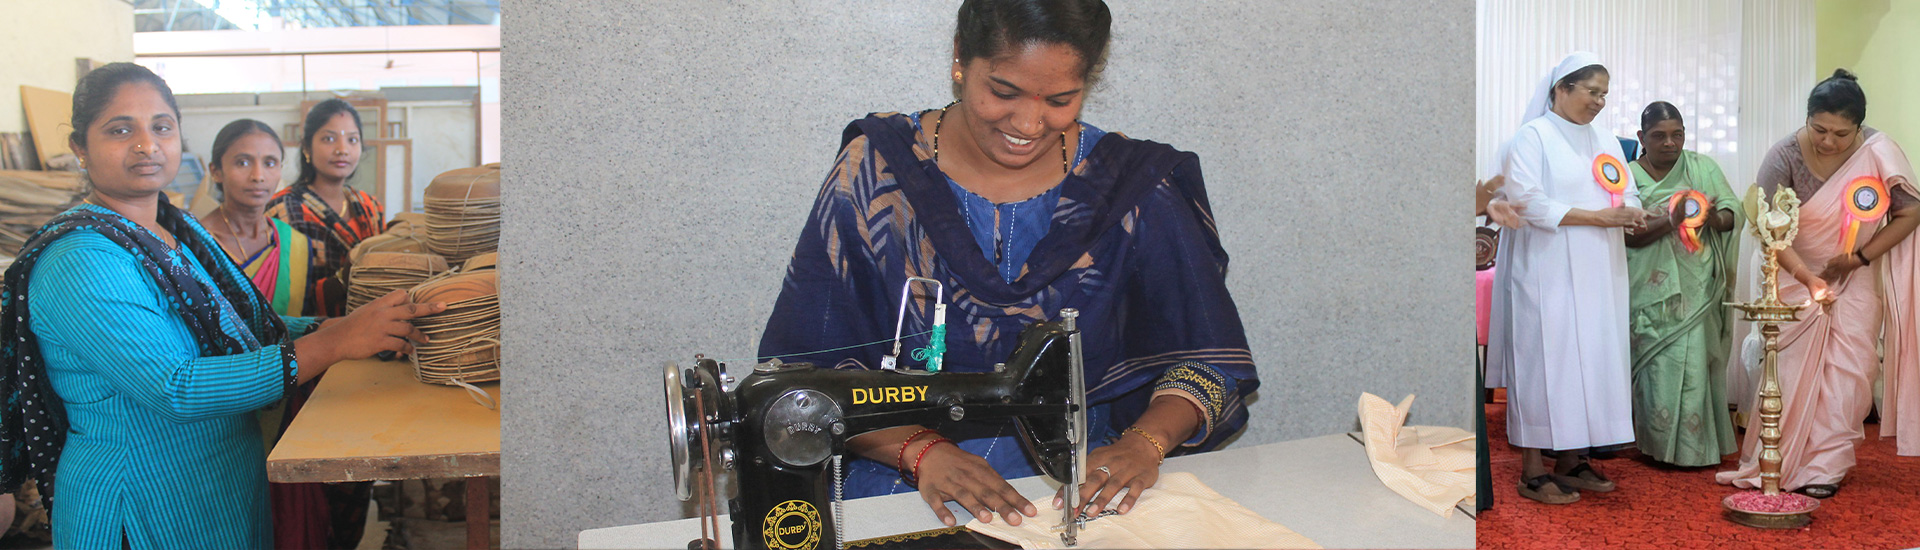 Empoderamiento femenino en el sur de India - 2976